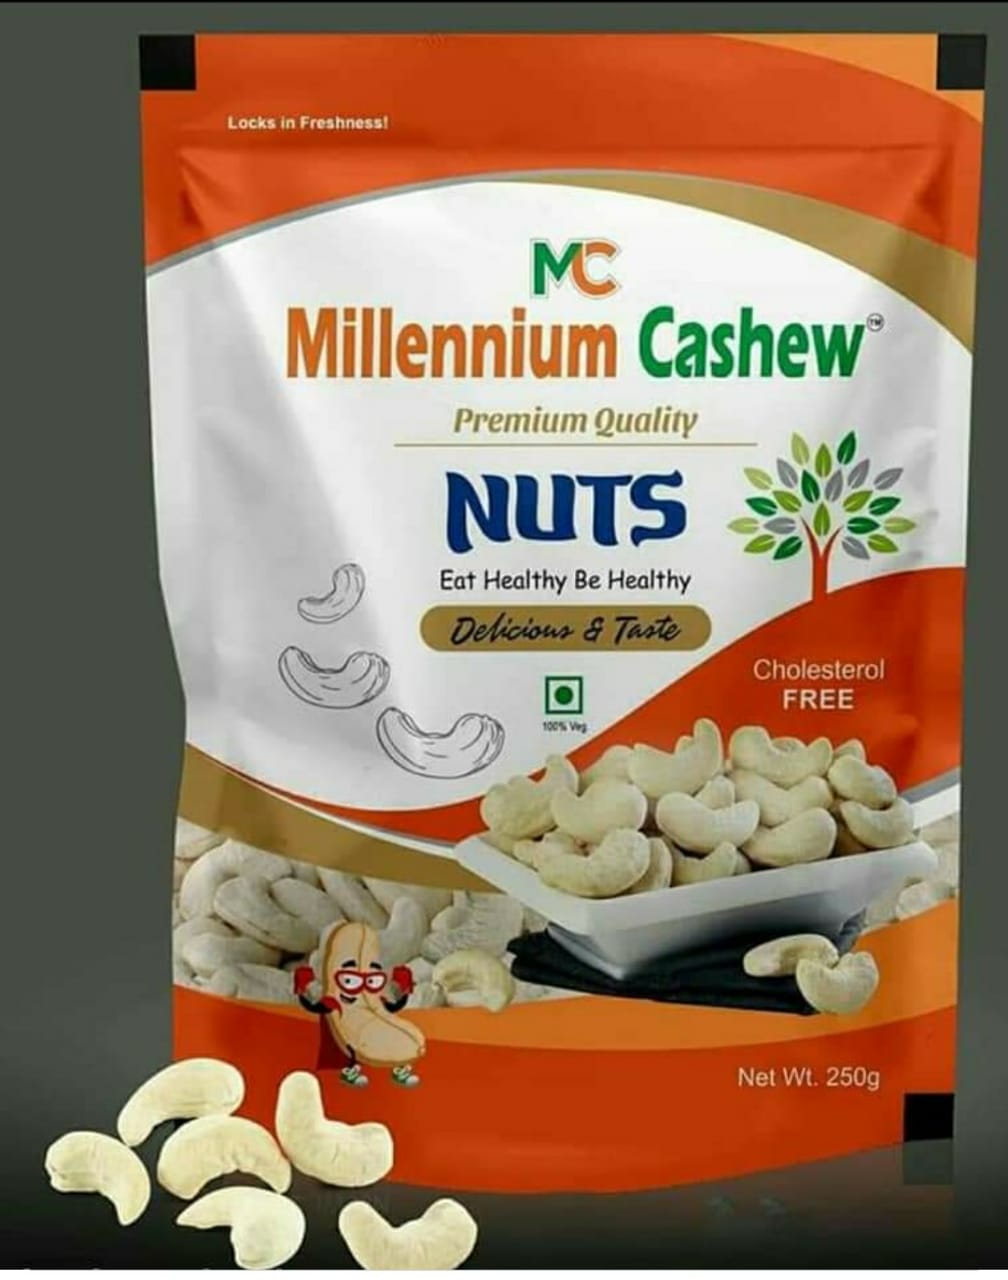 Millennium Cashew Industry